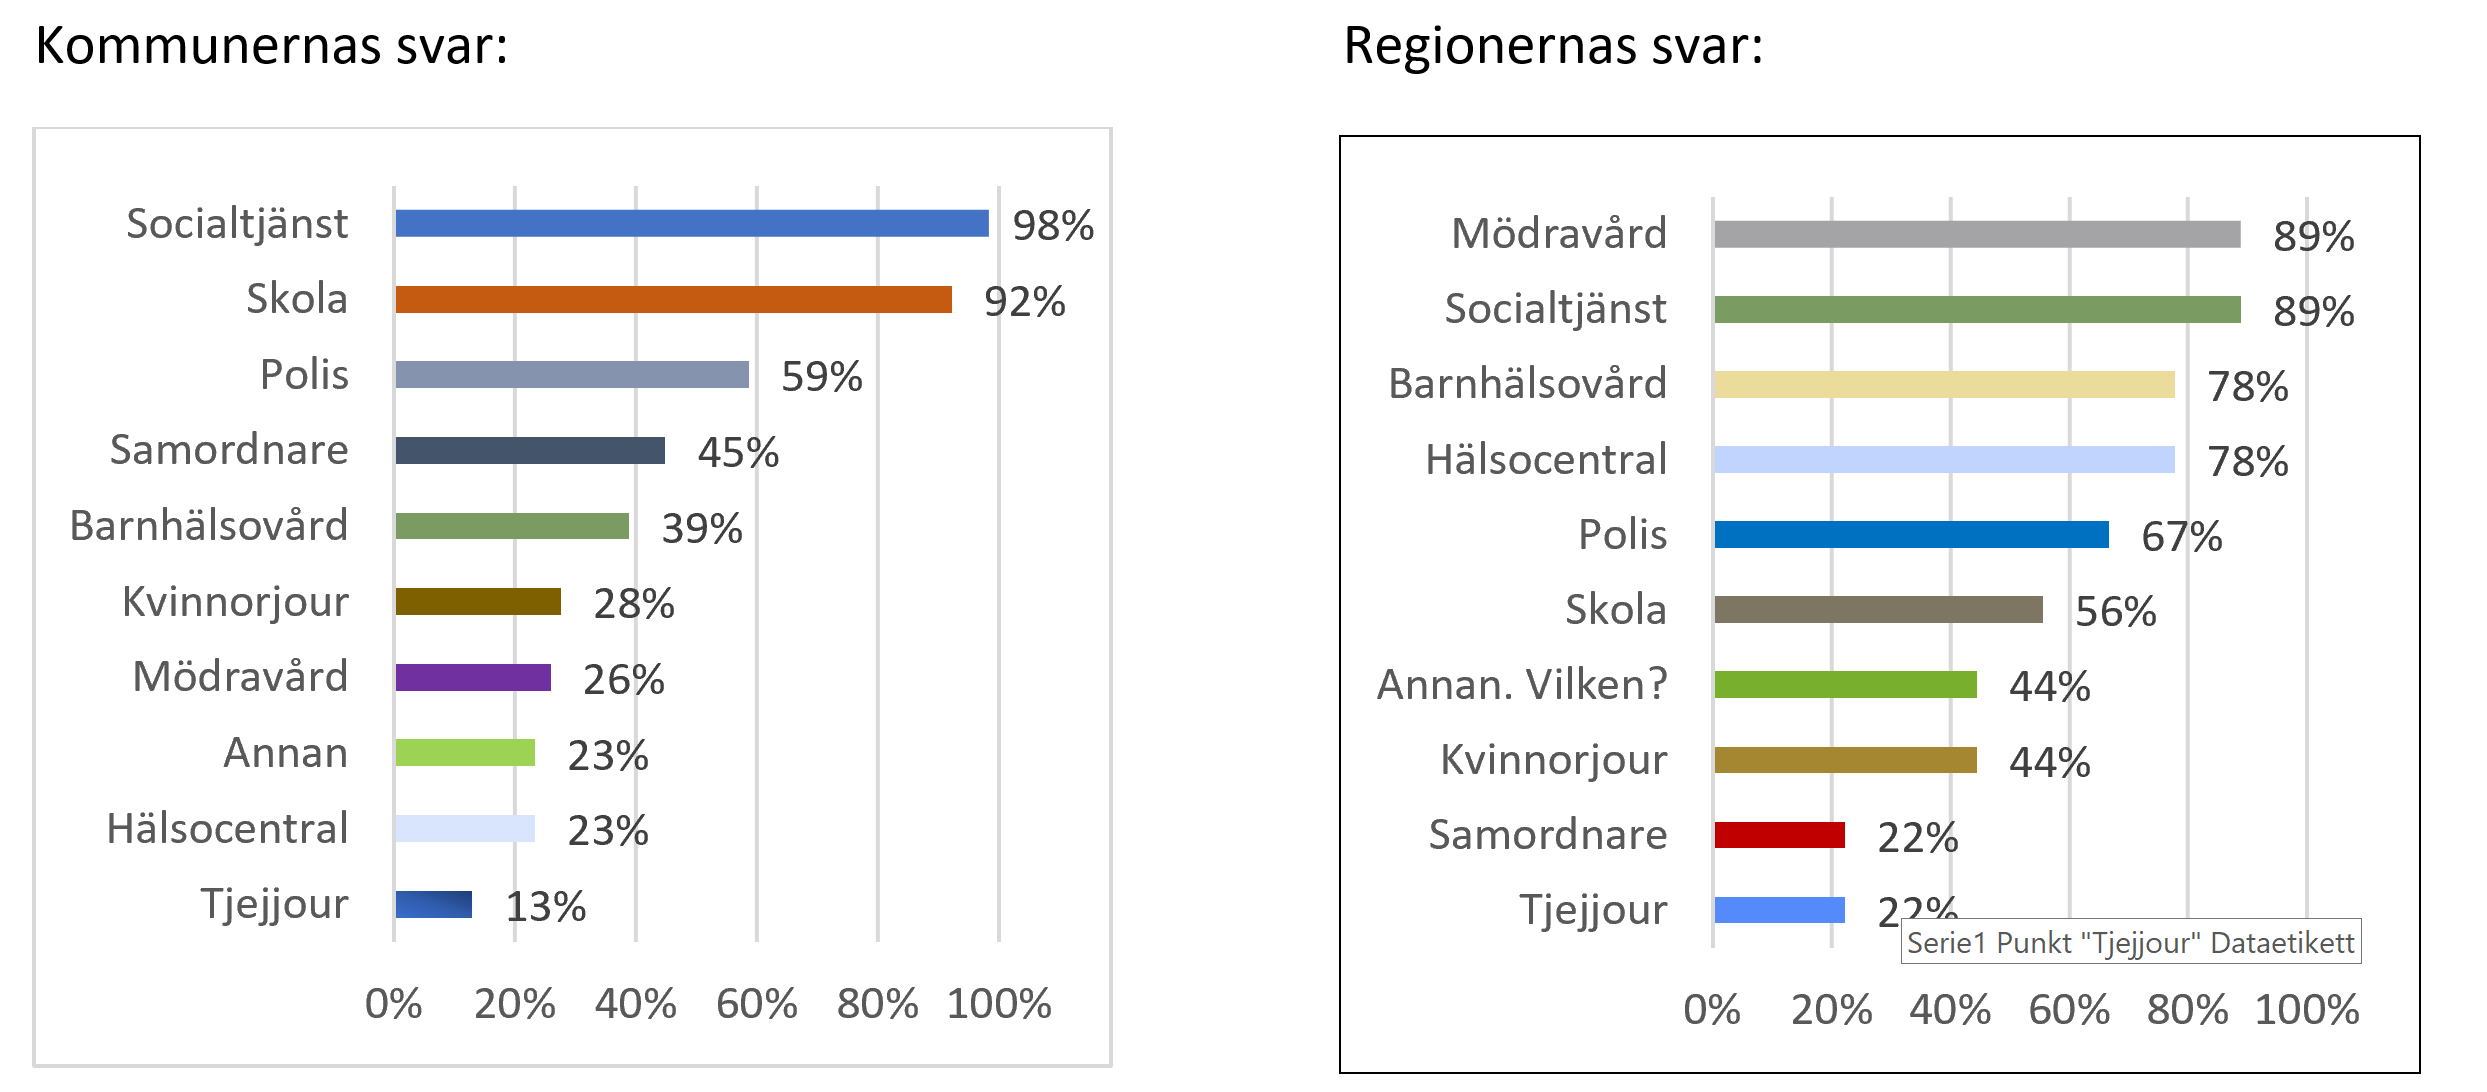 Graf som jämför kommuners och regioners svar